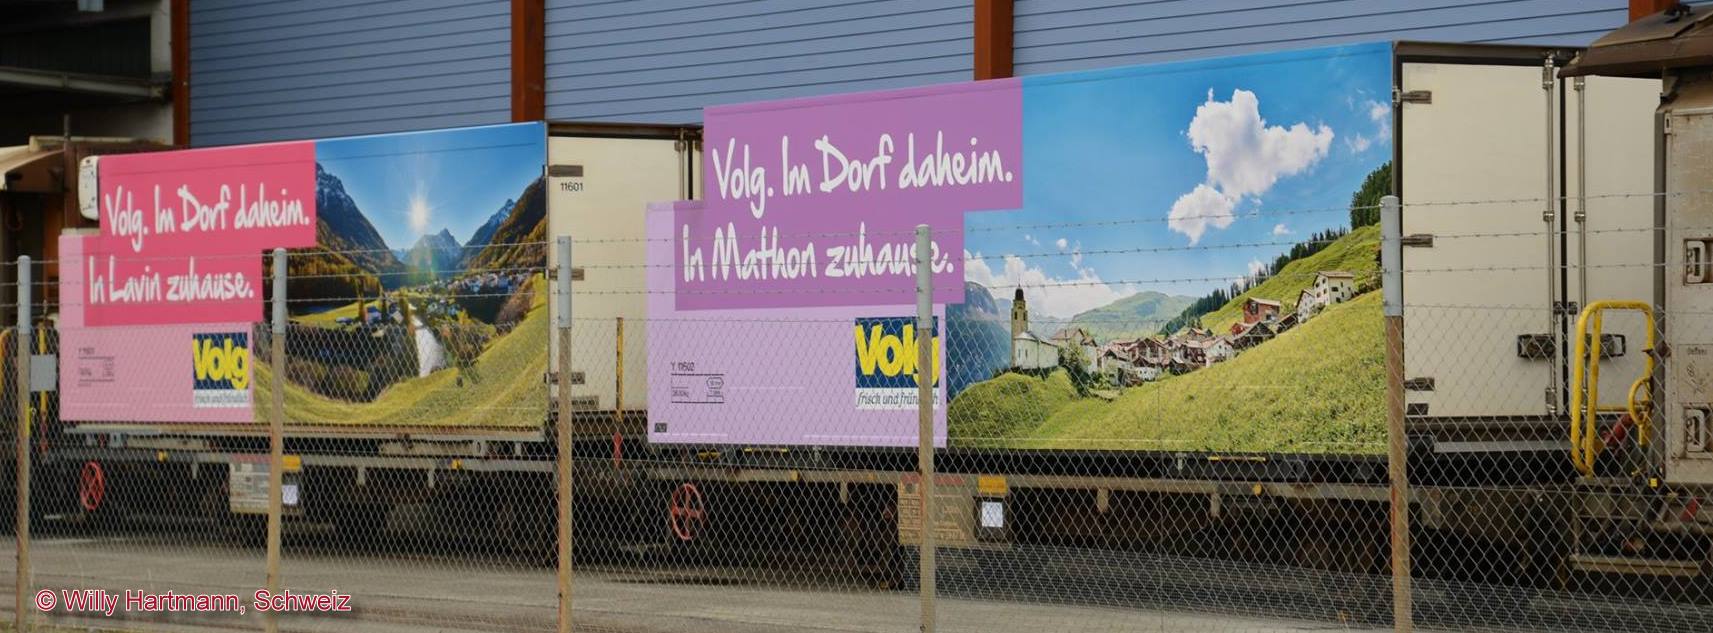 Bild oben: die beiden Khlcontainerwagen "In Lavin zuhause" und "In Mathon zuhause" vor den Laderampen der VOLG AG in Landquart in der Schweiz. Danke an Willy Hartmann fr das Bild. 